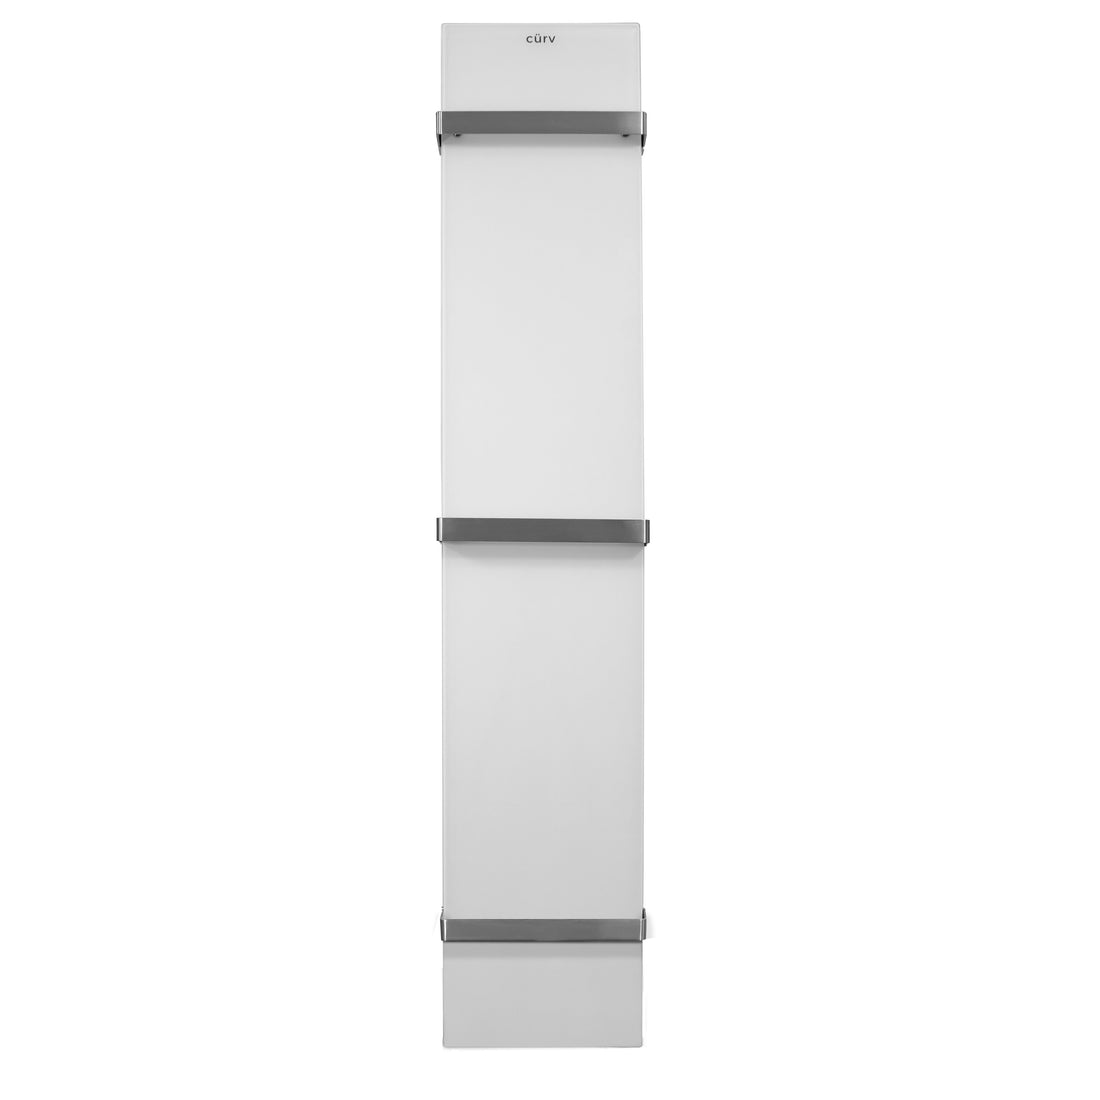 Cürv - Infrared Towel Heater (Tall)